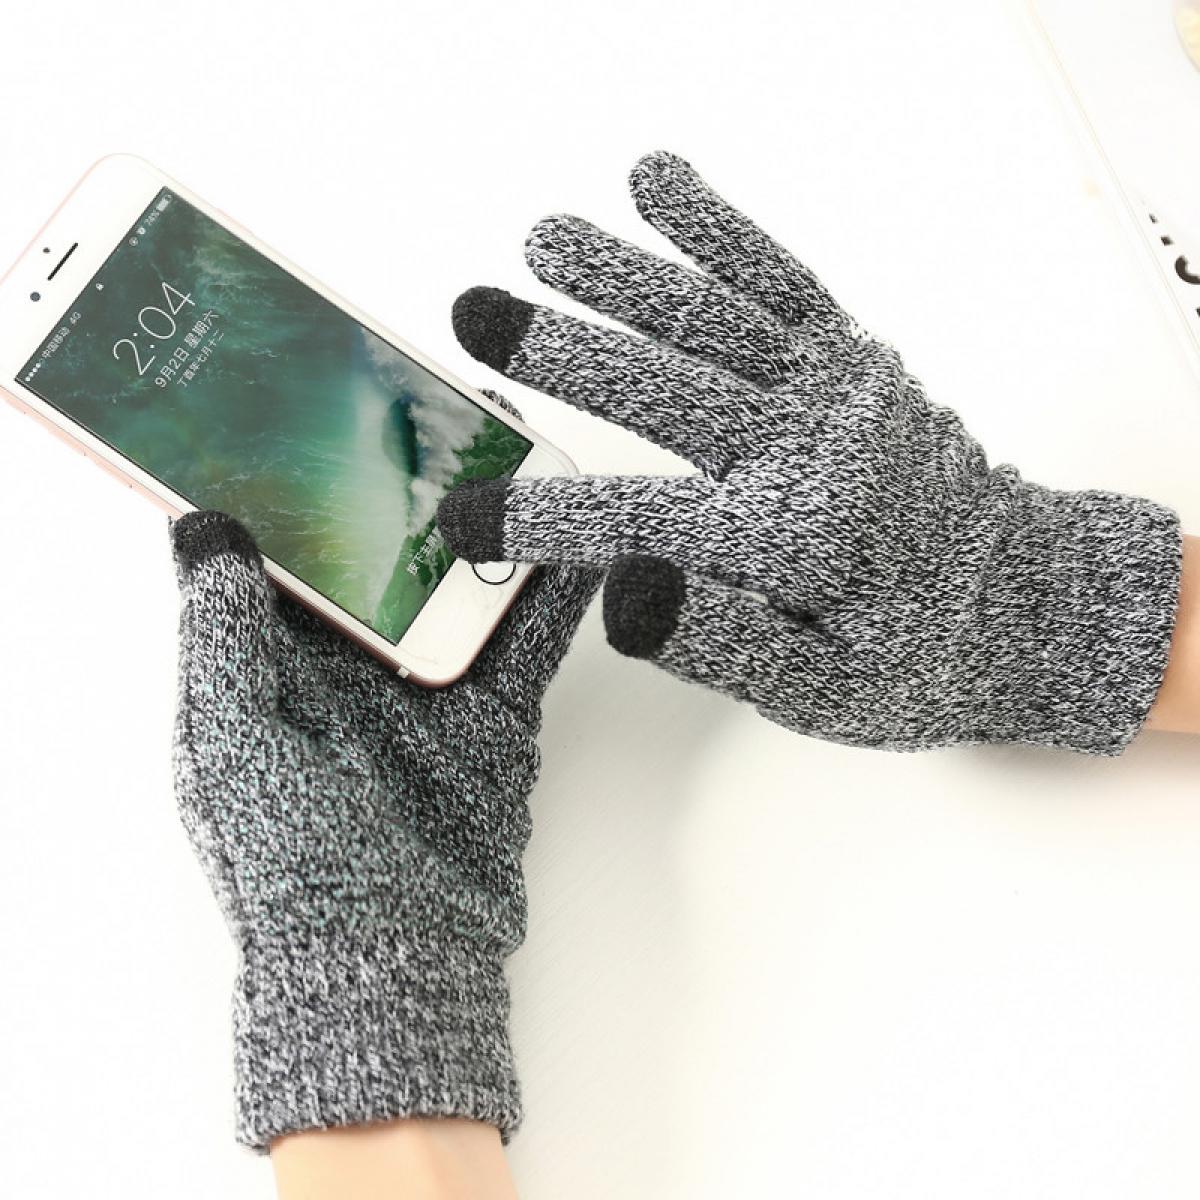 Shot - Gants Homme tactiles pour SONY Xperia XZ Premium Smartphone Taille M 3 doigts Hiver (NOIR) - Autres accessoires smartphone